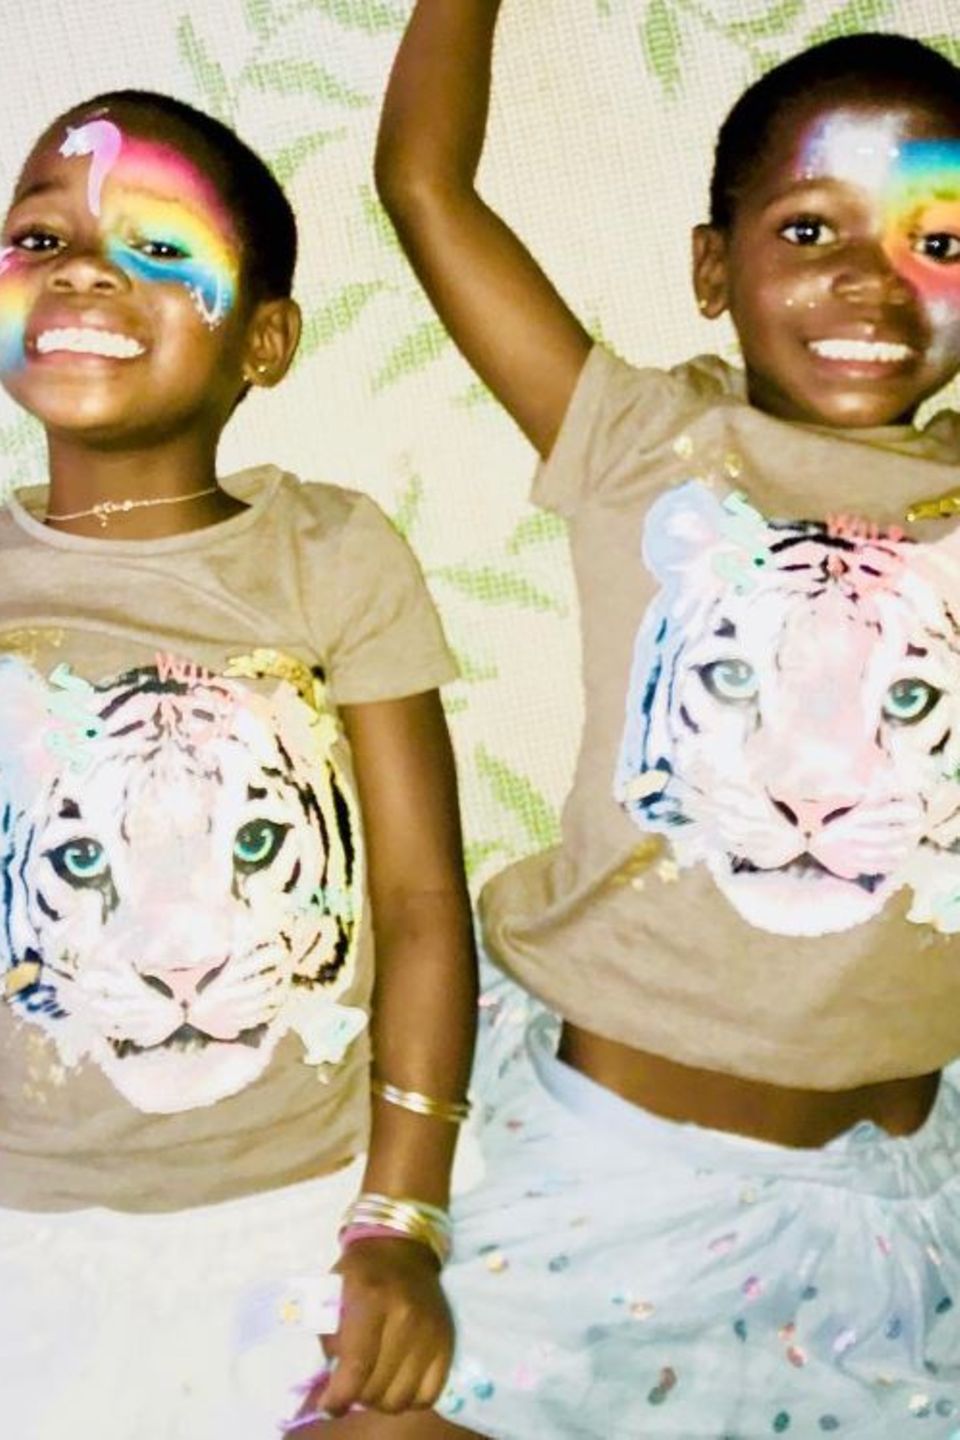 6. Oktober 2017   Stella und Ester, die Adoptivkinder von Pop-Queen Madonna, fühlen sich bei ihrer neuen Mutter scheinbar pudelwohl. Schöne Gesichtsbemalung und coole Shirts mit Tiger drauf bringen die Schwestern zum Grinsen.